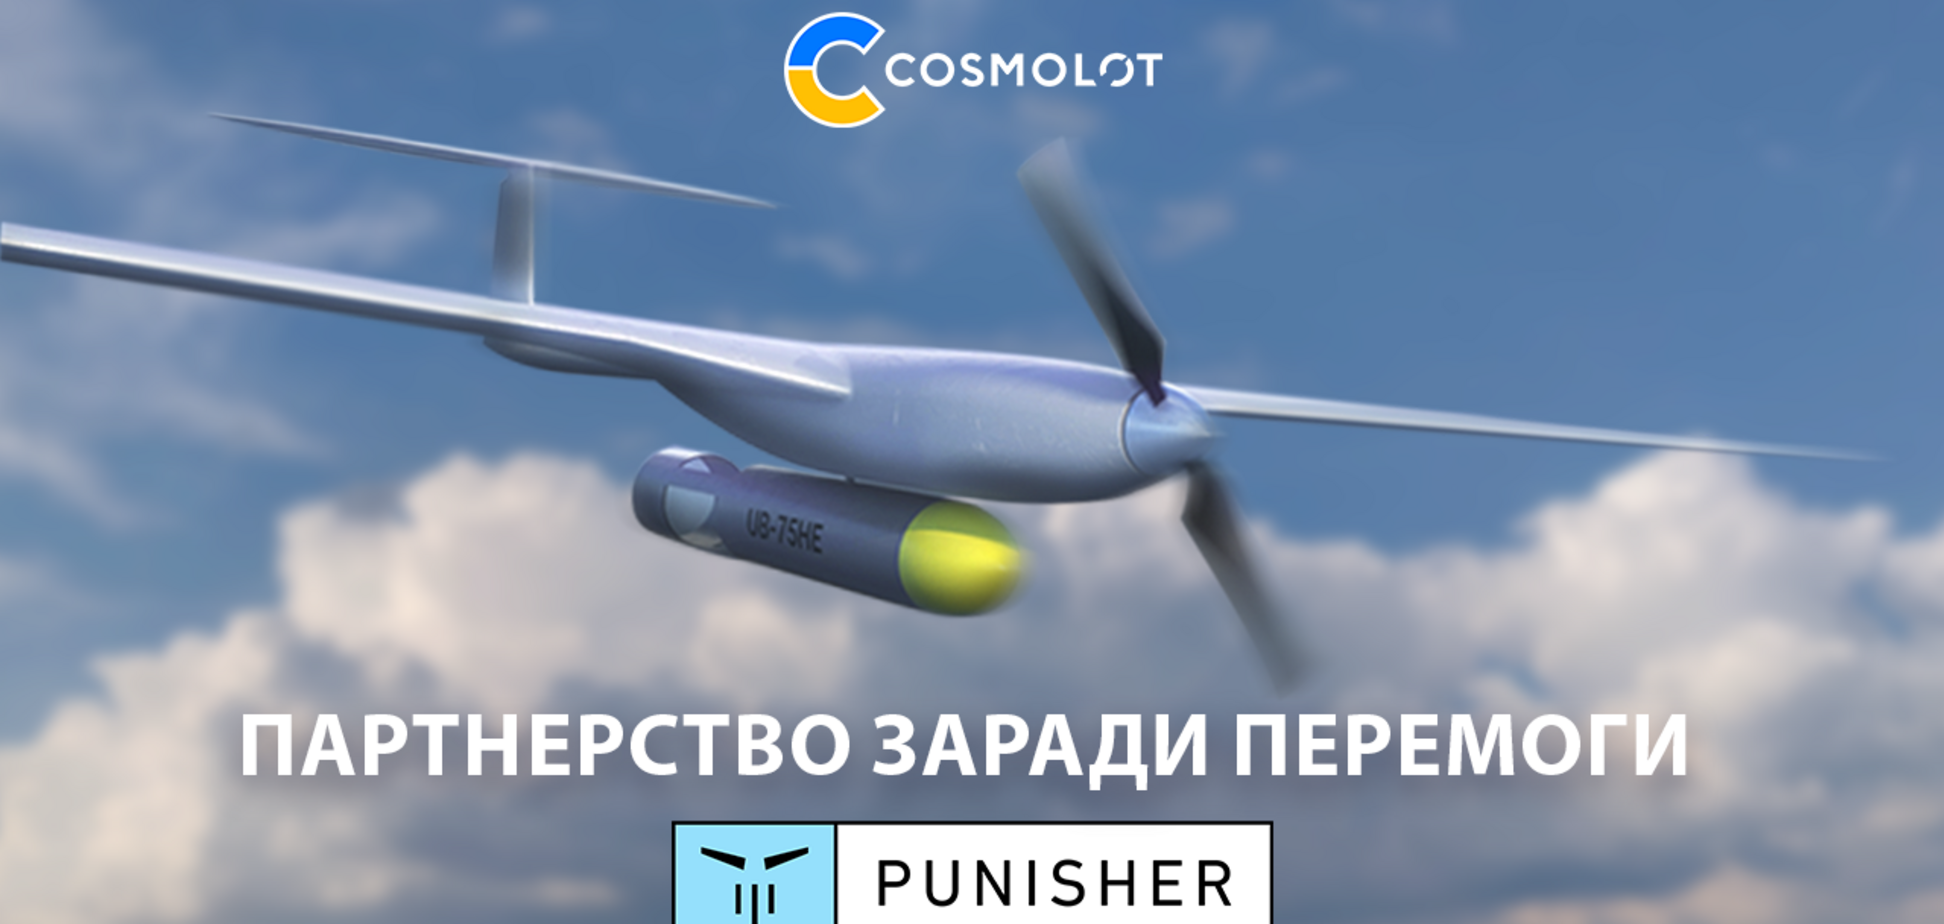 COSMOLOT стал партнером украинской компании, производящей ударные дроны Punisher